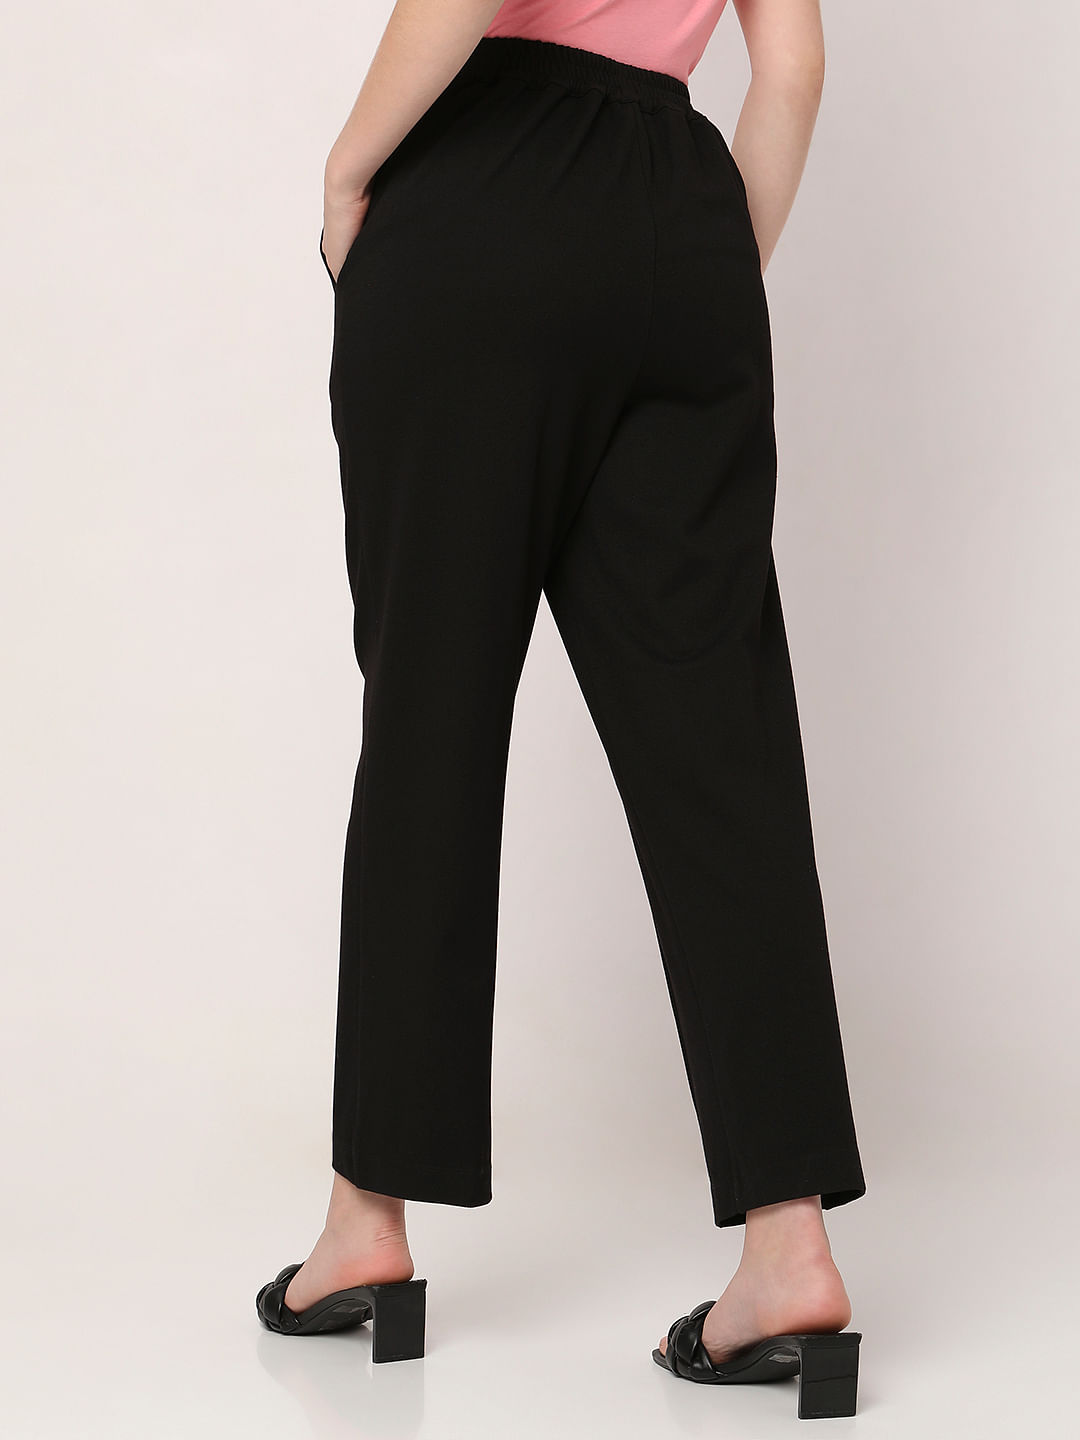 Buy FRATINI Black Regular Fit Regular Length Polyester Women's Trousers |  Shoppers Stop